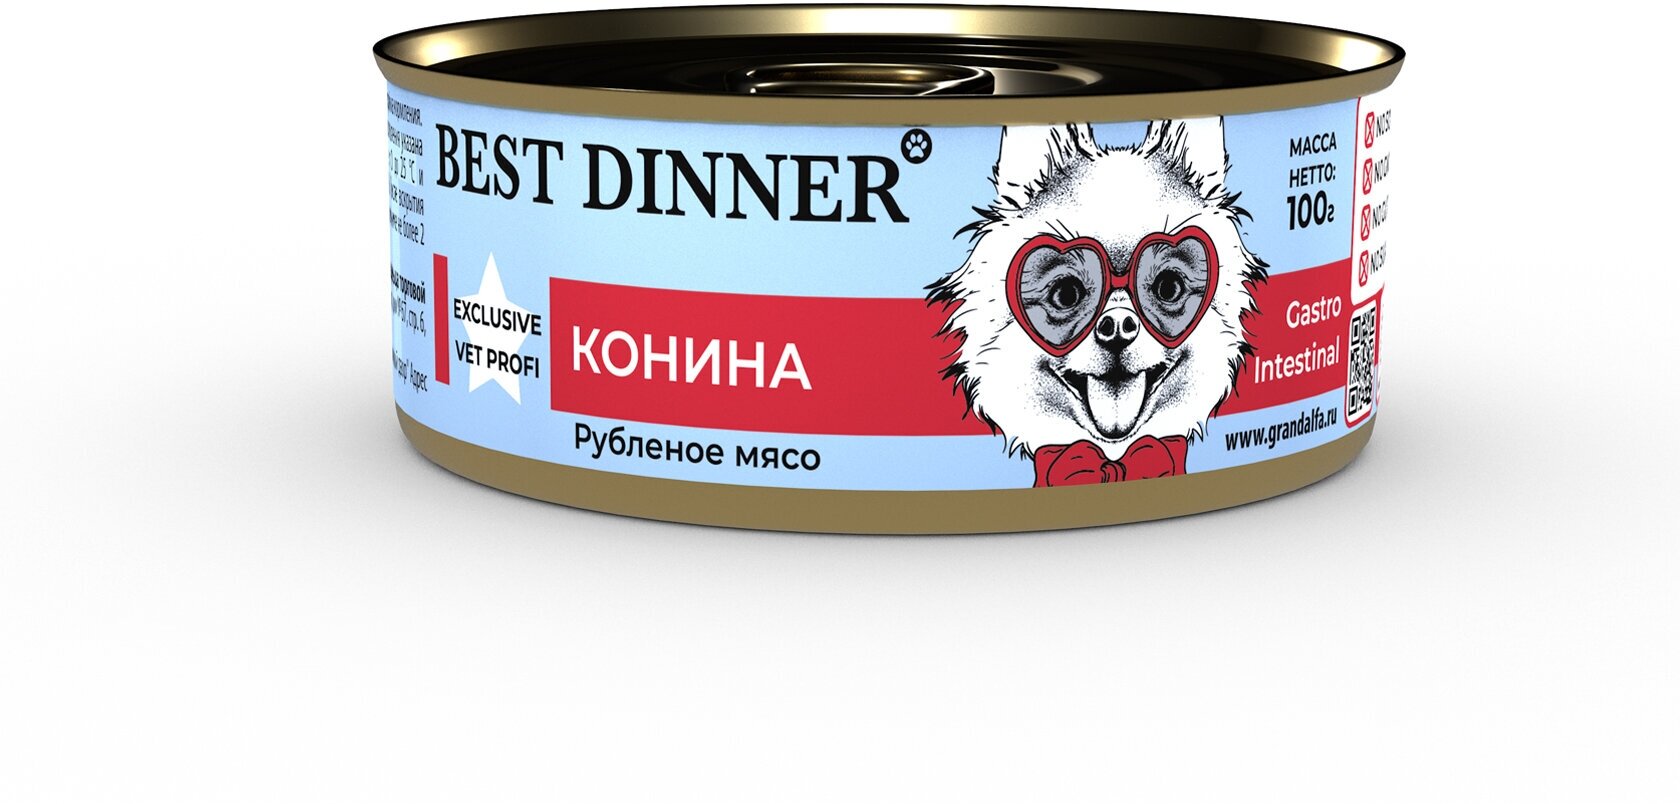 Best Dinner Vet Profi Gastro Intestinal Exclusive 12шт по 100г конина консервы для собак